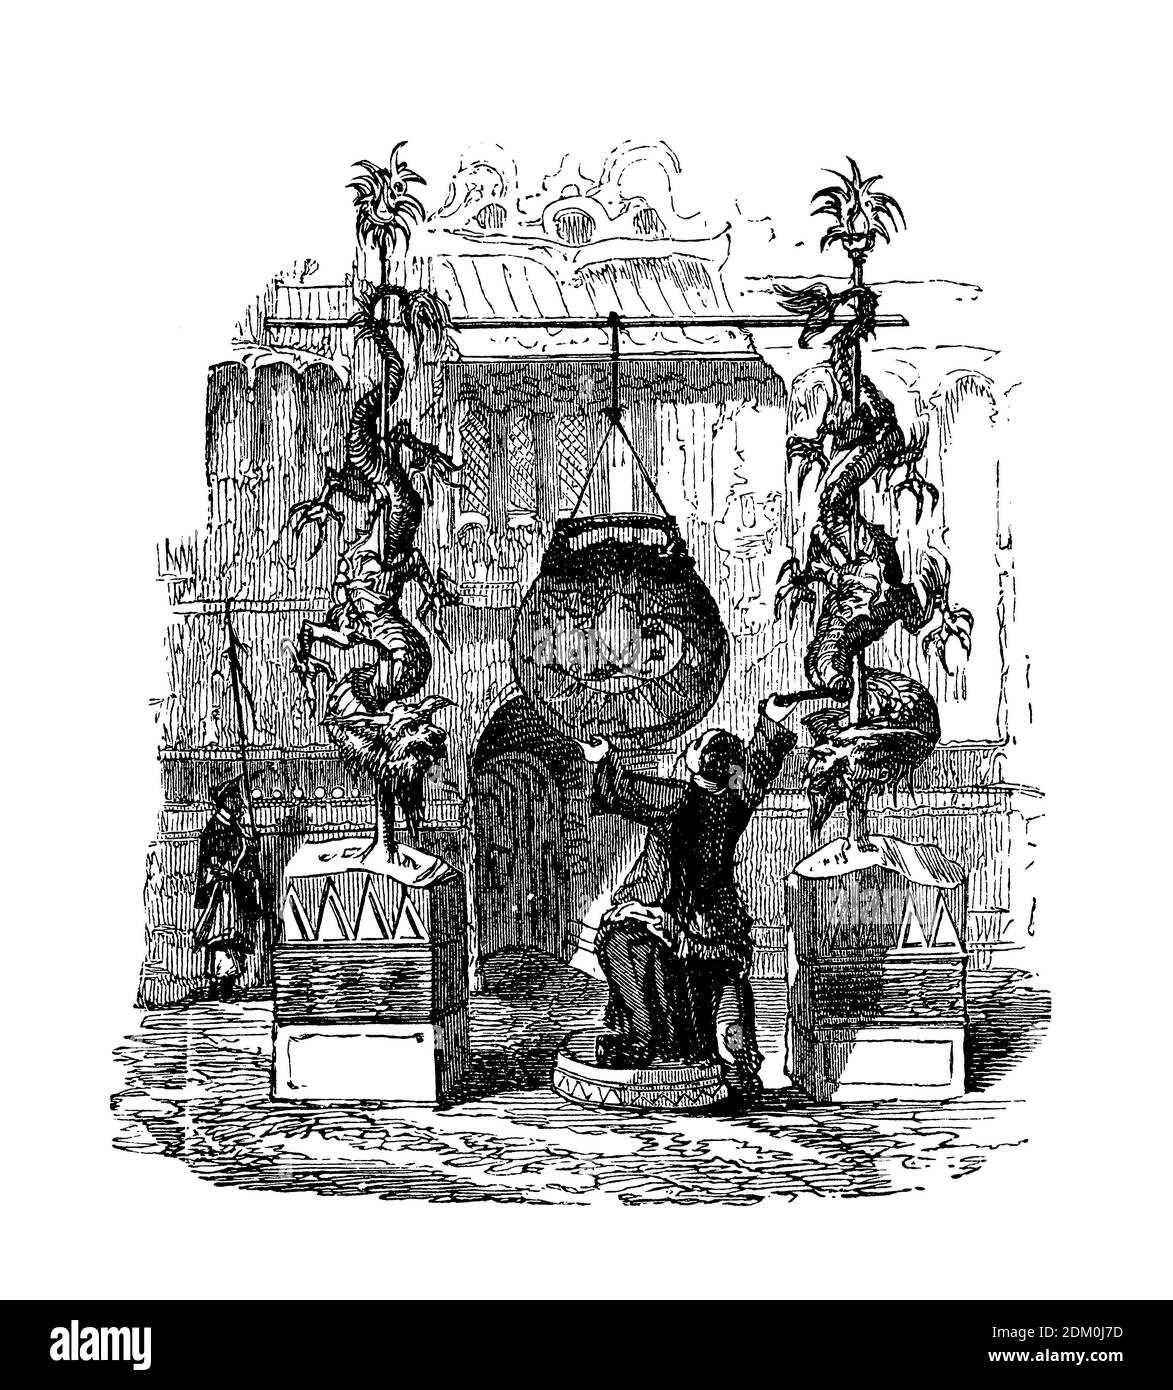 Le gong chinois, instrument de percussion musicale, commence au 6ème siècle formé par un disque de métal en bossed circulaire suspendu qui frappe avec un maillet produit un long son résonnant. Banque D'Images